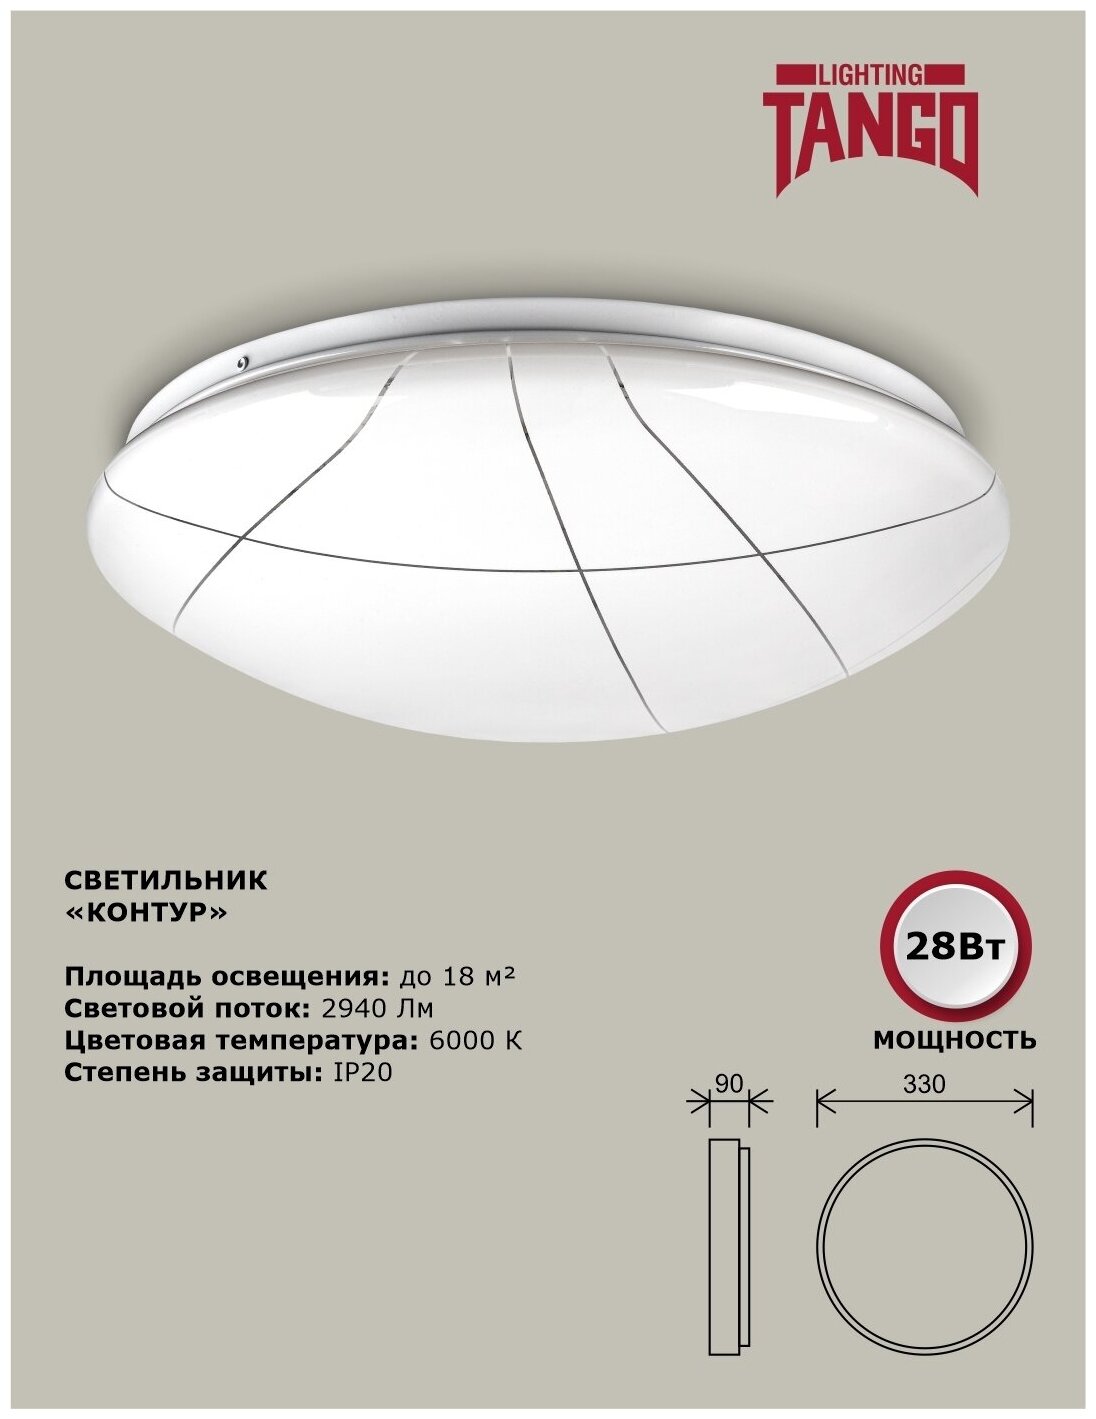 Cветильник светодиодный настенно-потолочный "контур" 28Вт 6000К полусфера (330*90, основание 300мм) TANGO россия LED